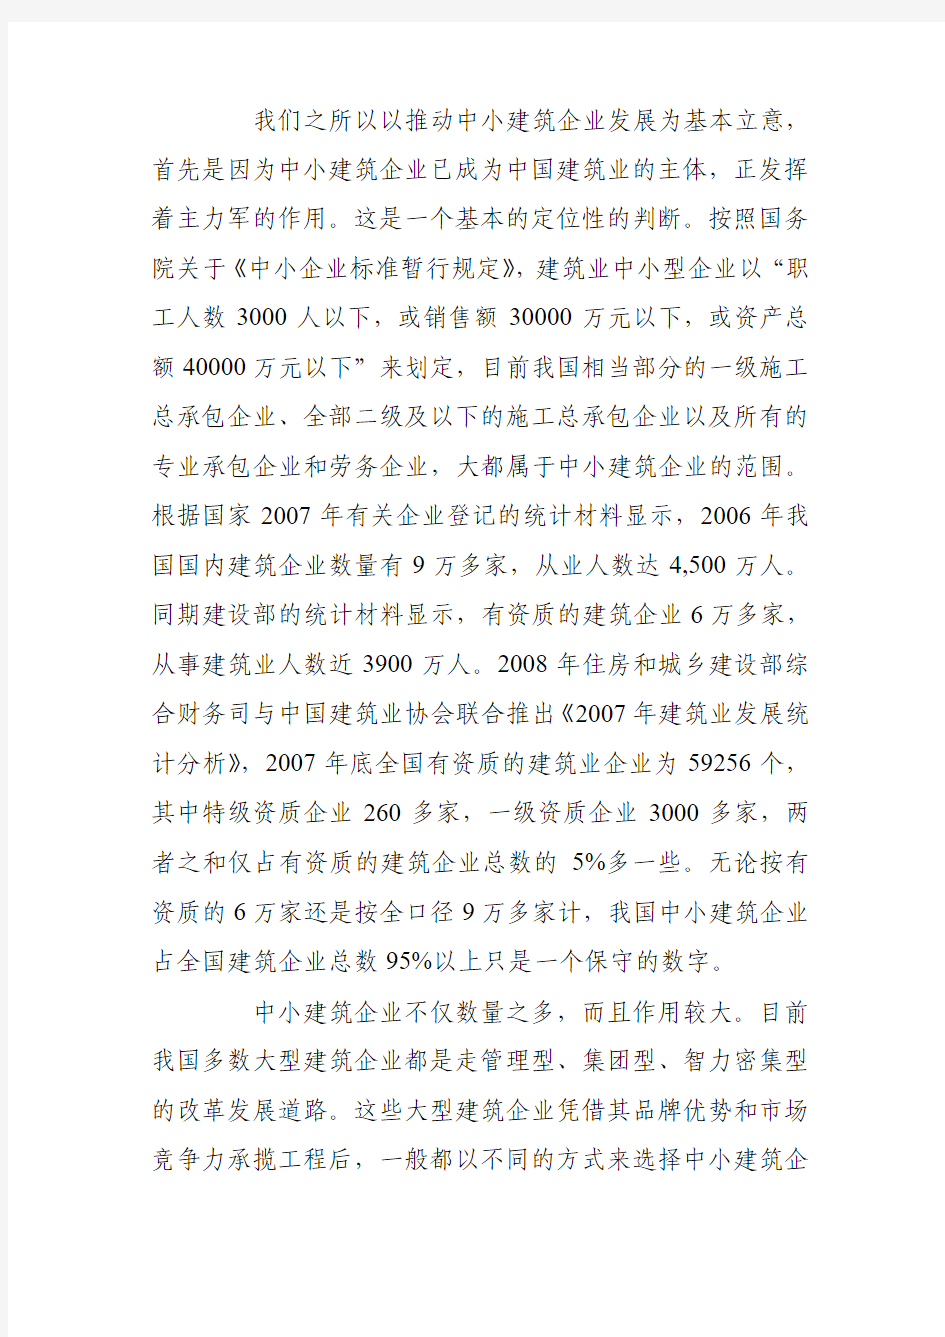 张青林同志在首届中国中小建筑企业发展论坛上的主题报告